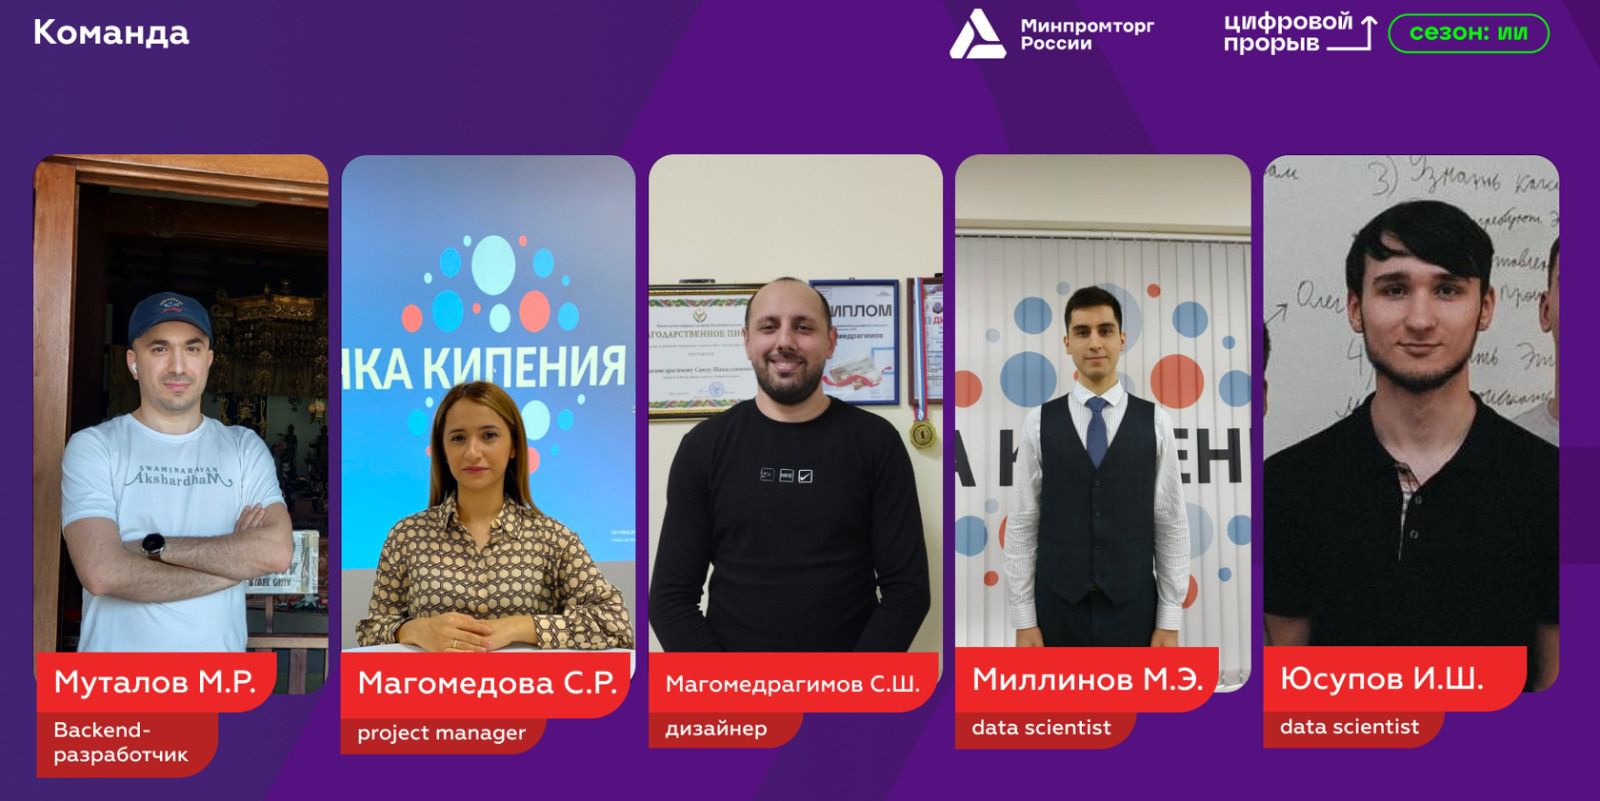 Команда из Дагестана — победитель хакатона по искусственному интеллекту в СКФО